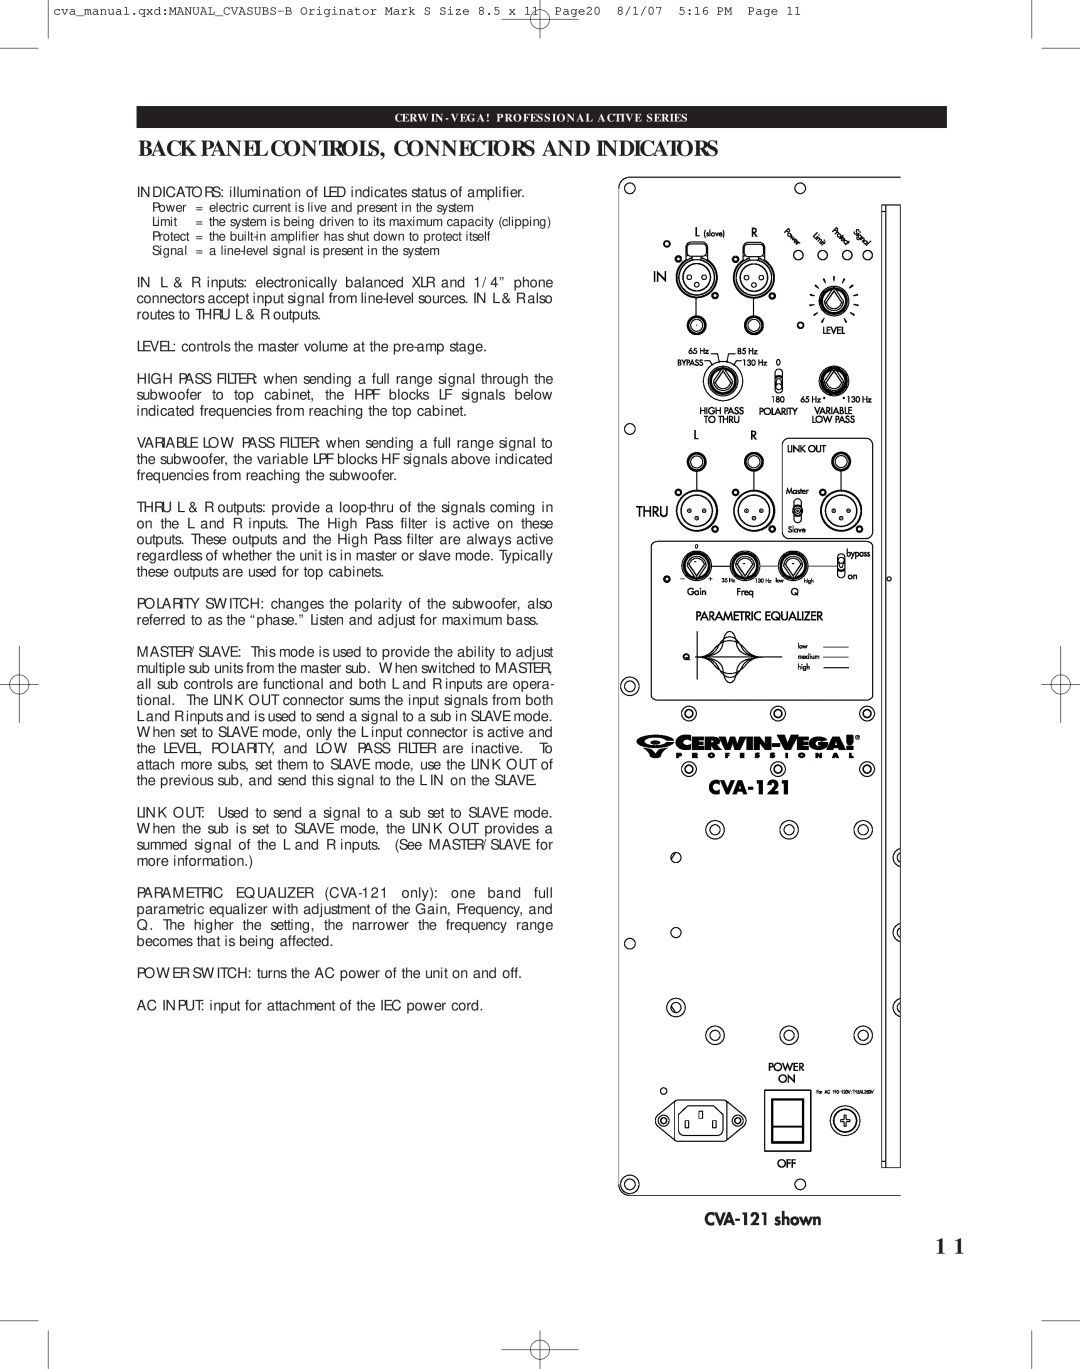 Cerwin-Vega CVA-121, CVA-118 manual Back Panel Controls, Connectors And Indicators, Power, Limit, Signal 